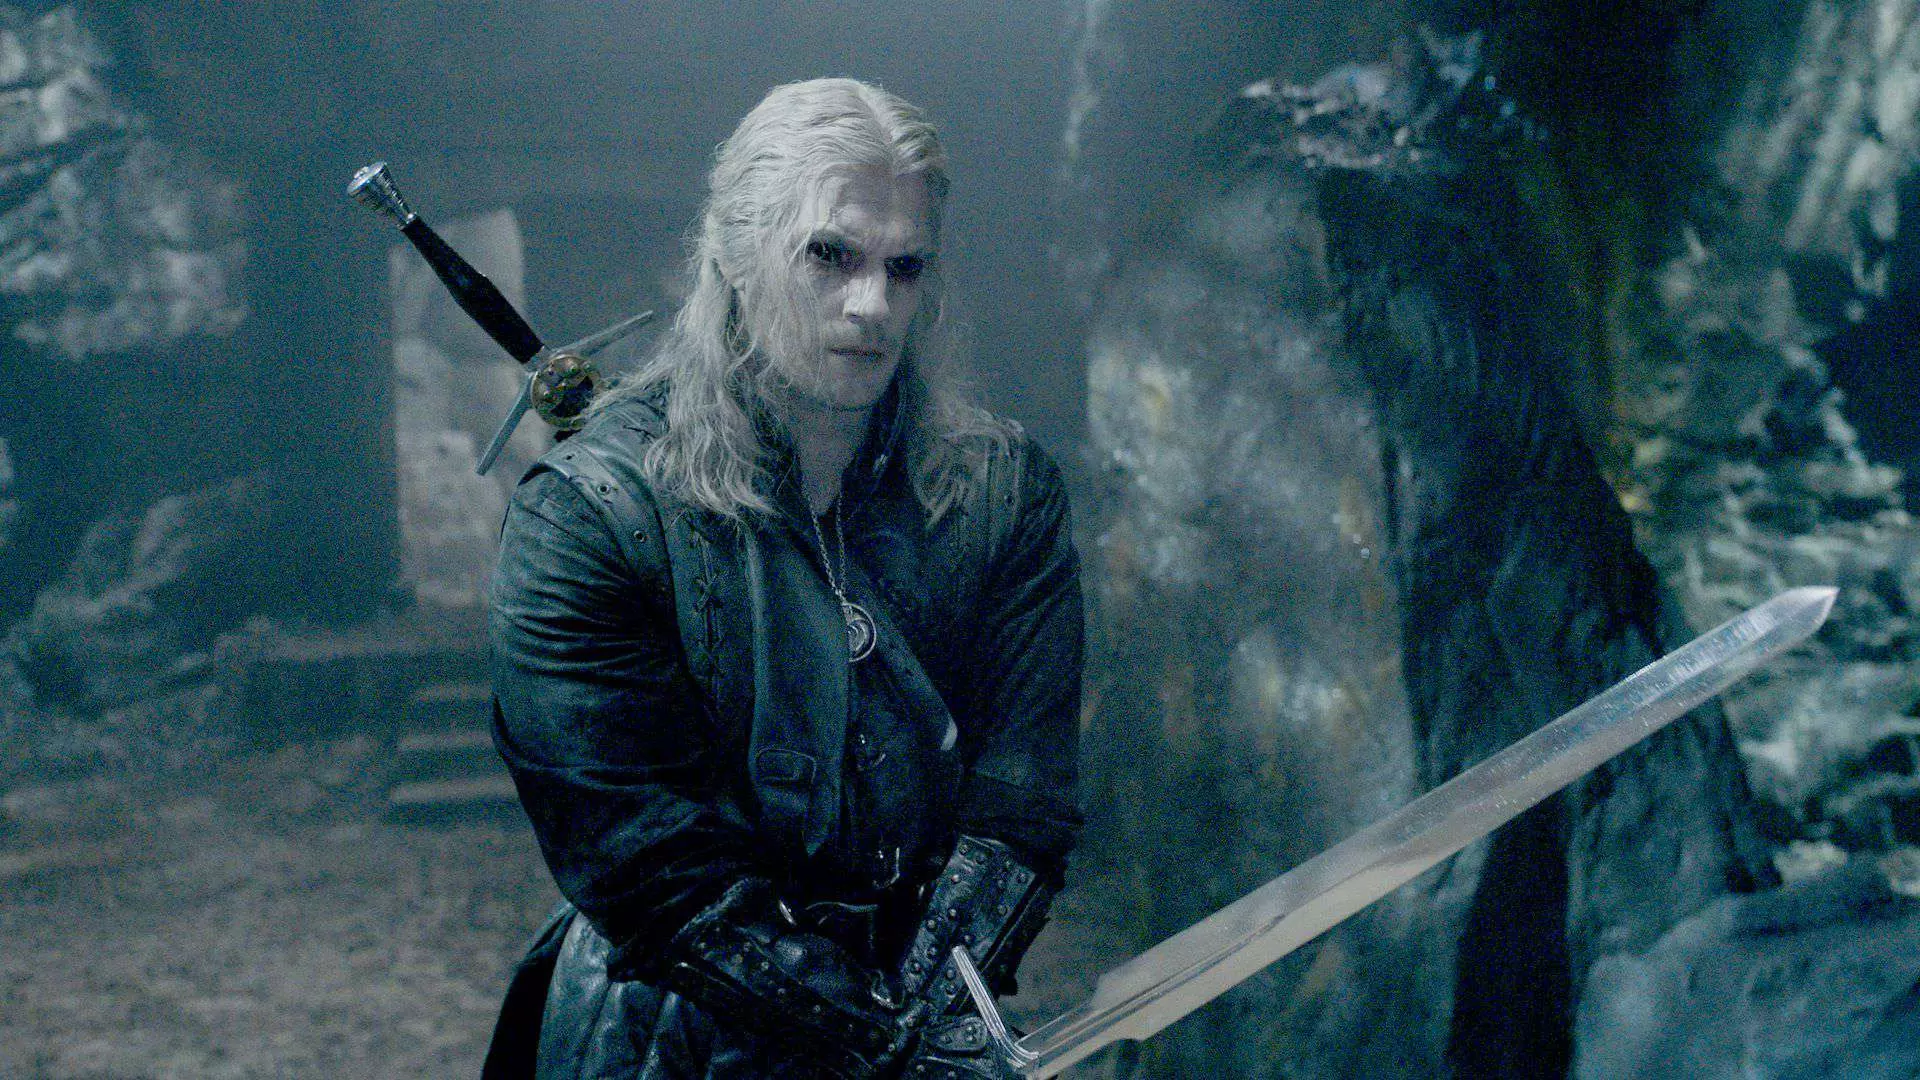 هنری کویل در نقش گرالت با چشمانی سیاه رنگ آماده مبارزه در فصل سوم سریال The Witcher با هیولاها می شود